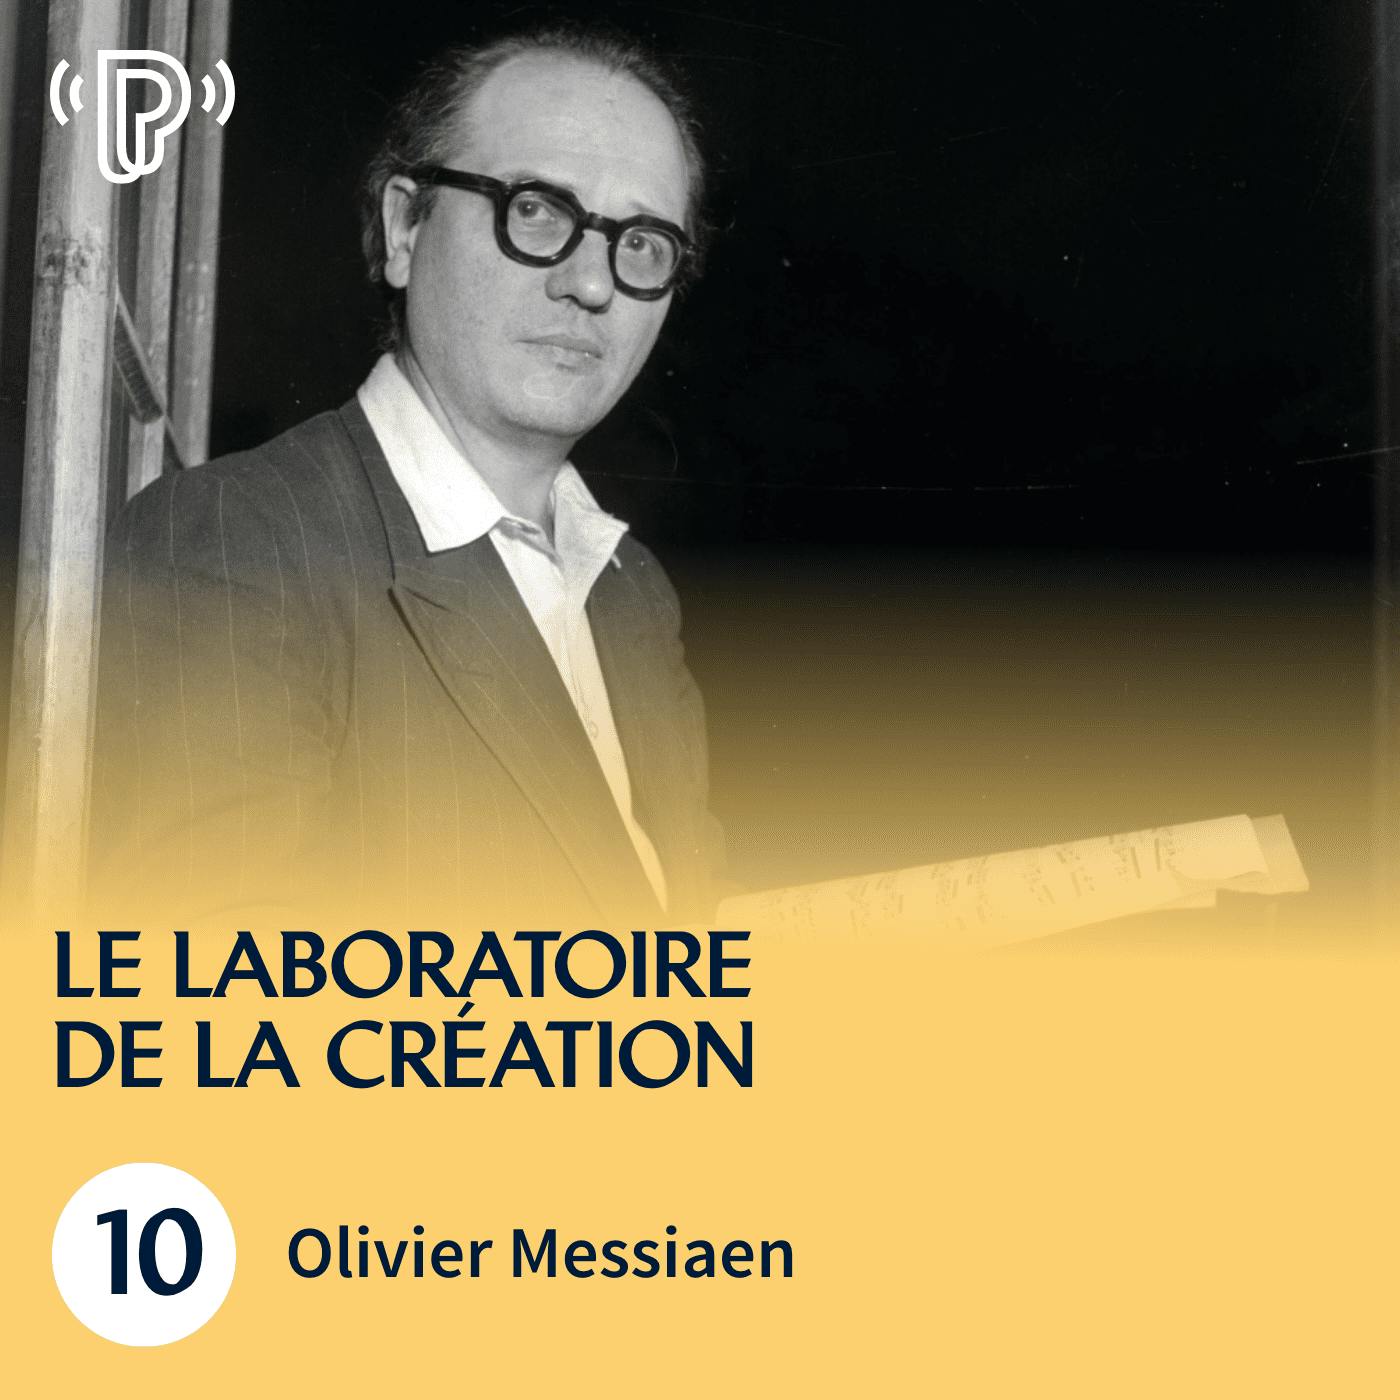 Les sons, les parfums et l’air d’Olivier Messiaen | Le Laboratoire de la création #10